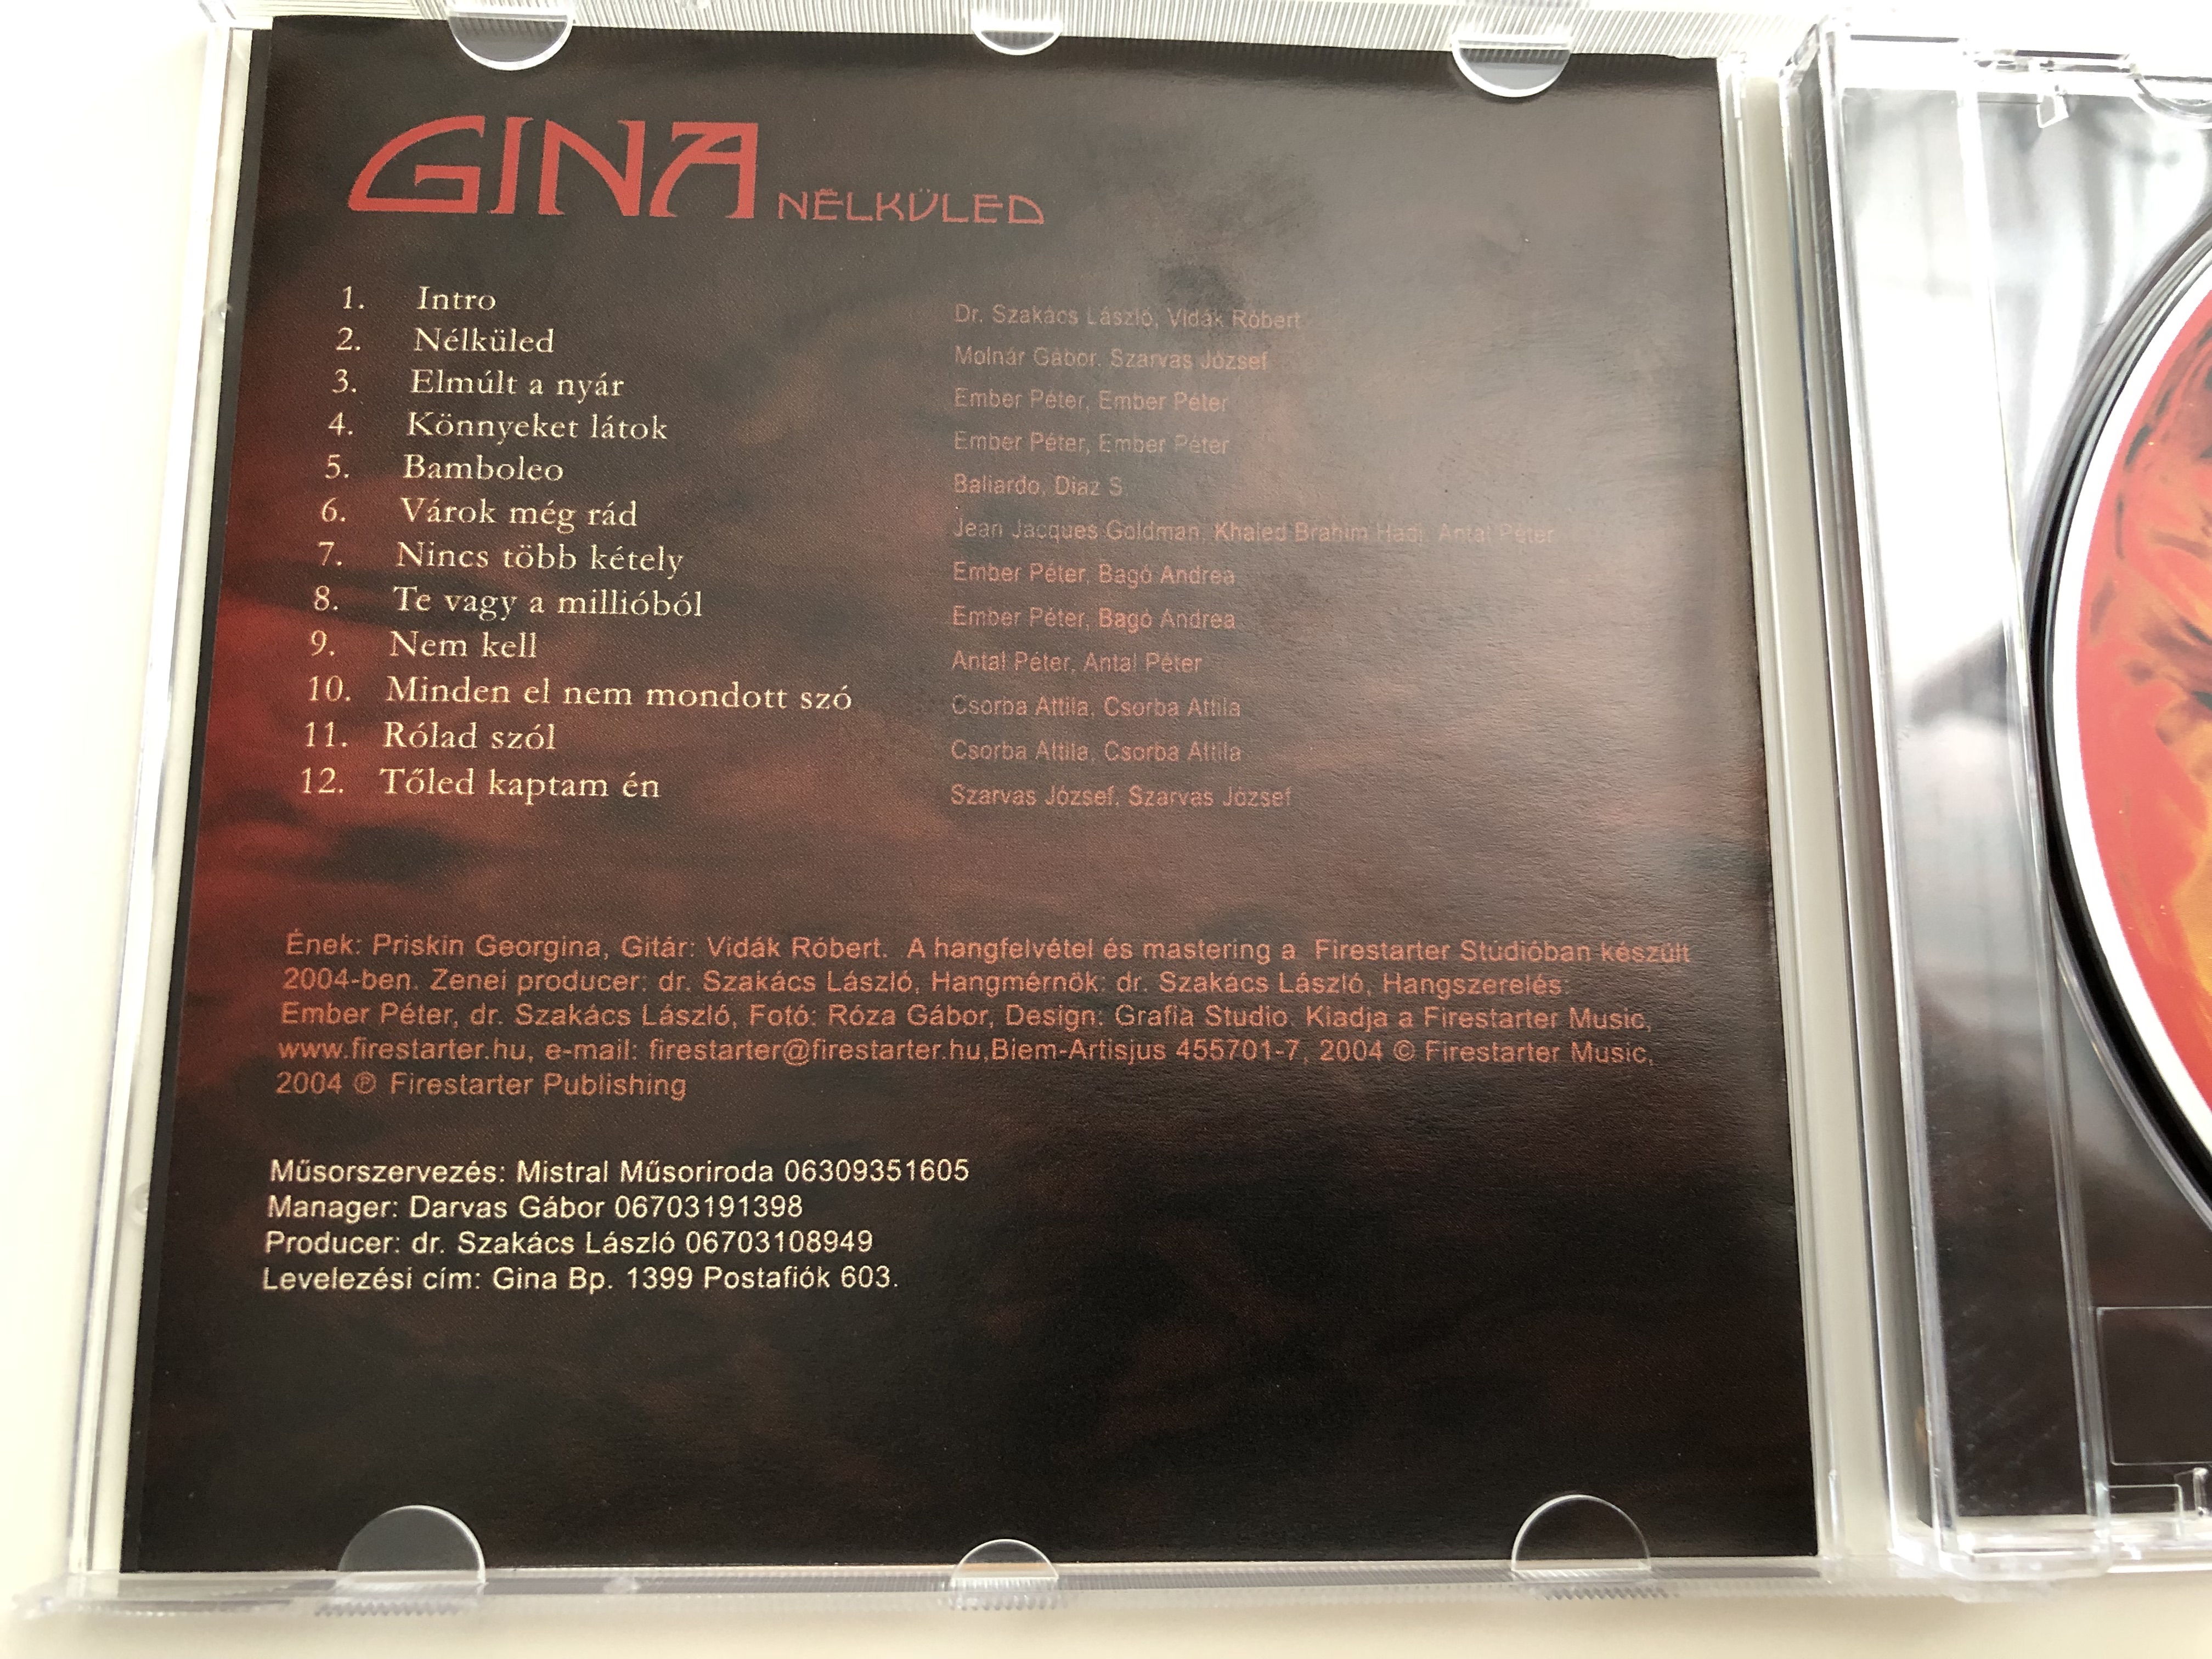 gina-n-lk-led-audio-cd-2004-firestarter-music-455701-7-5-.jpg